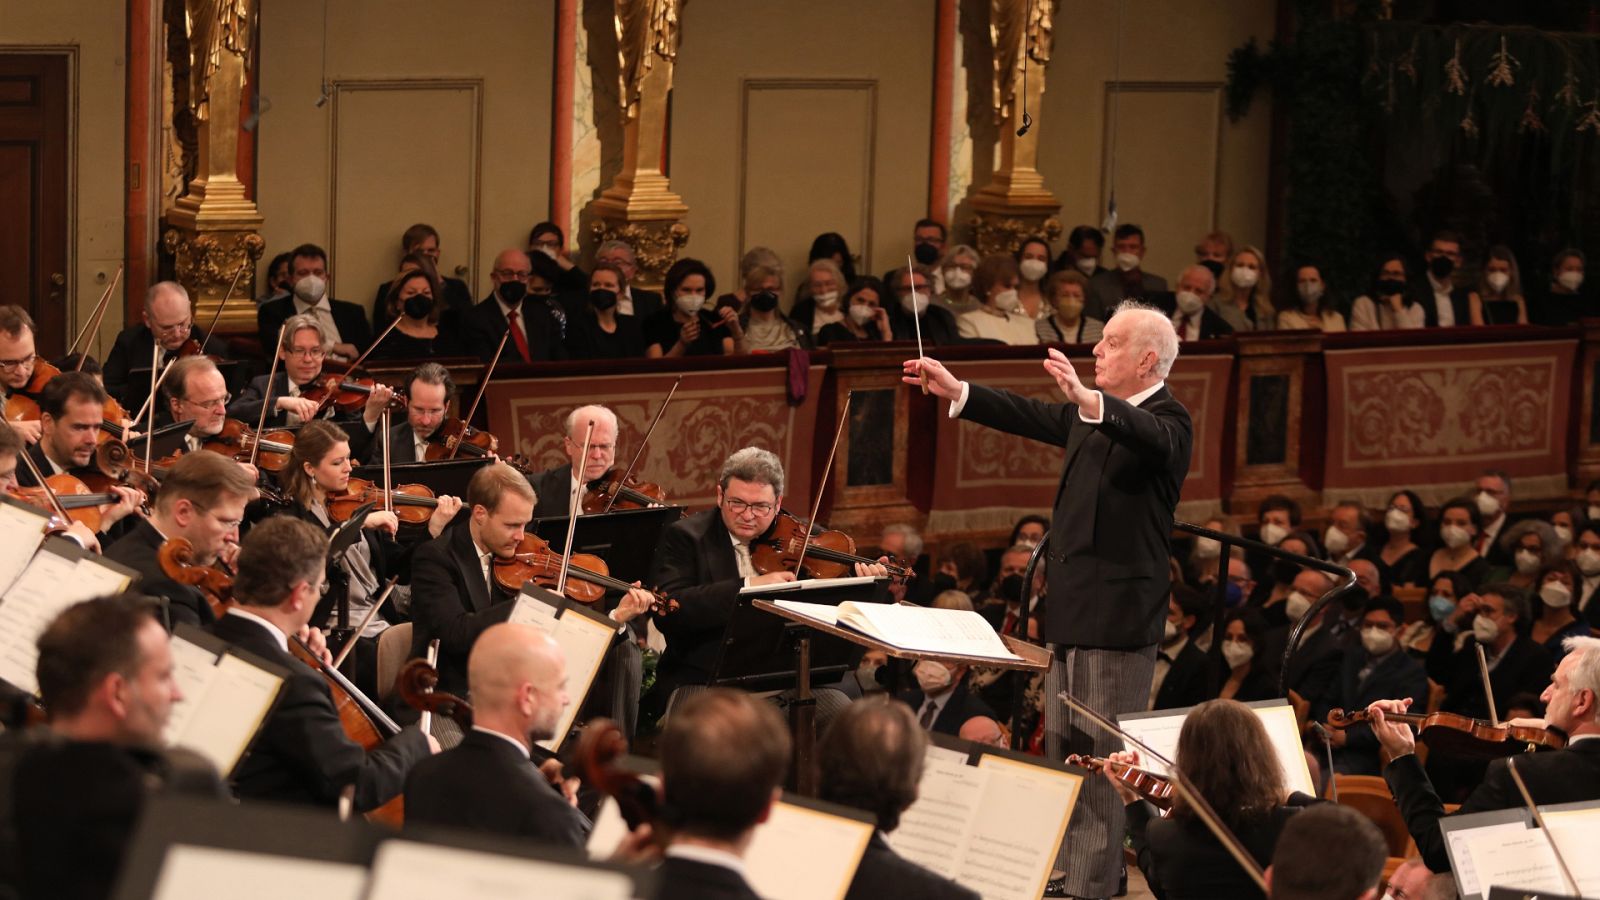 El público vuelve al Concierto de Año Nuevo de Viena